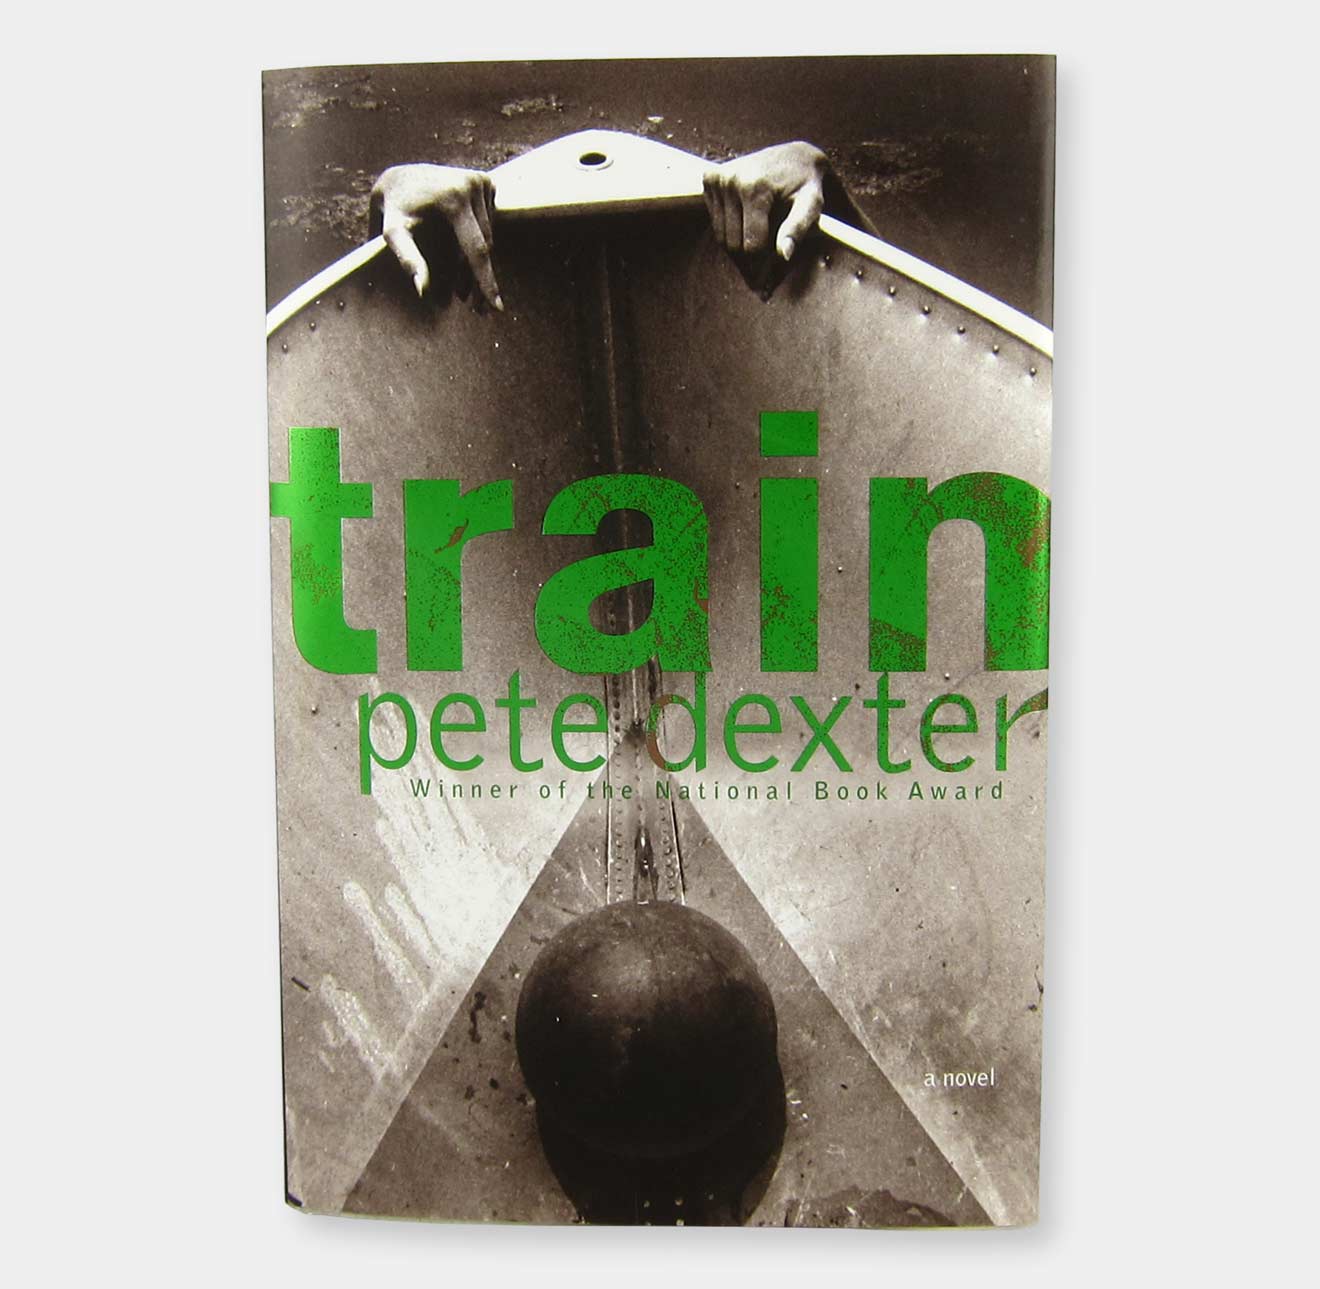 Train book cover